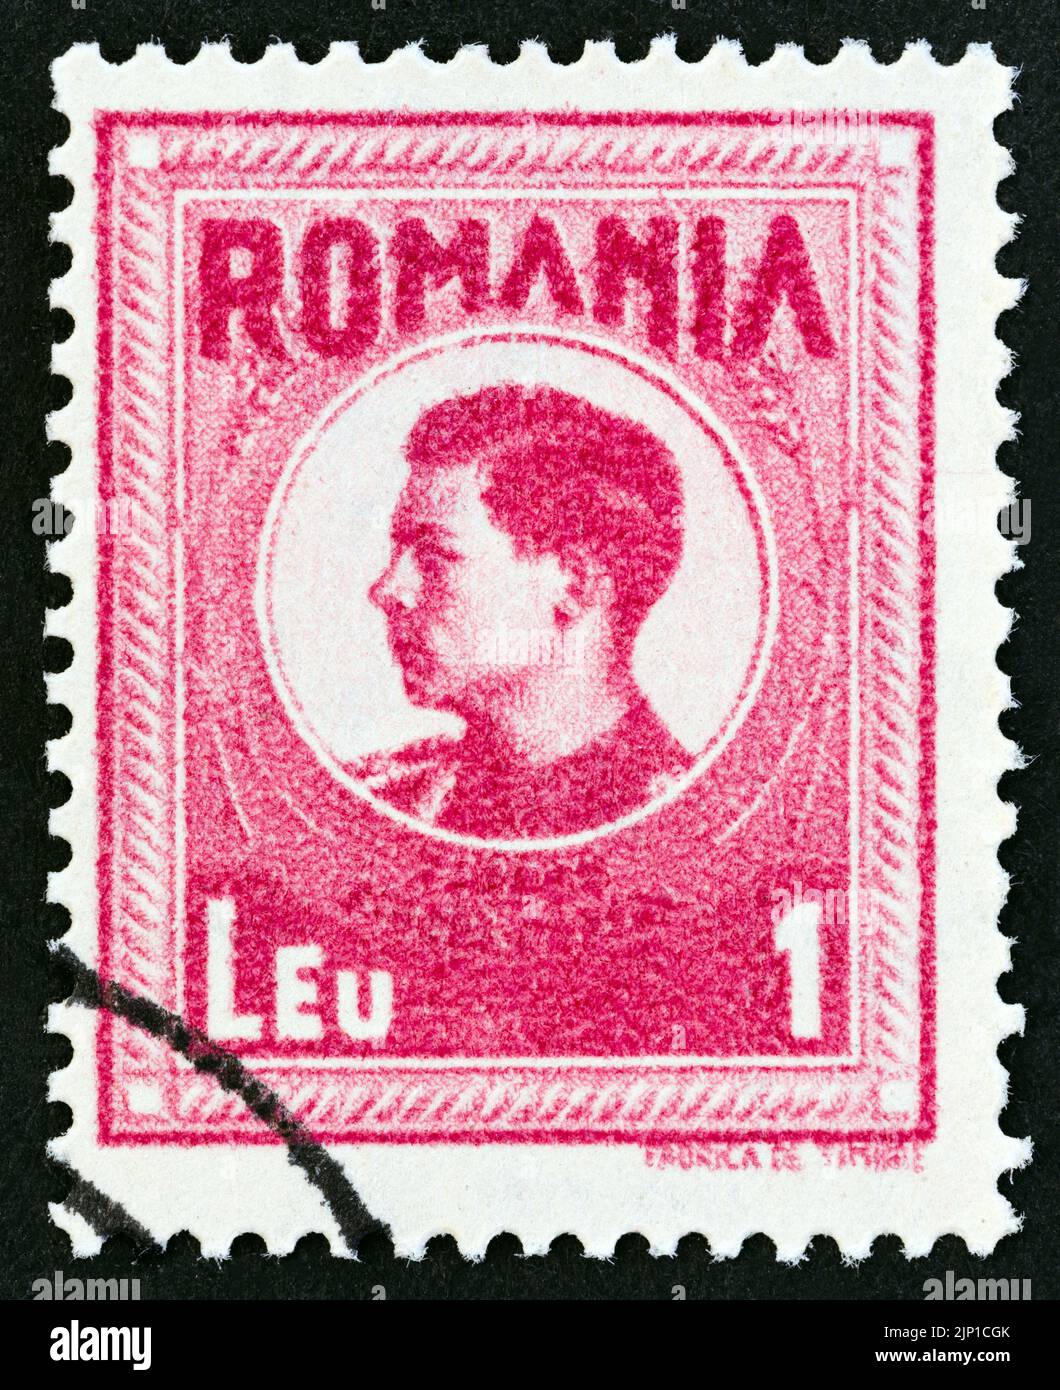 ROMANIA - CIRCA 1943: A stamp printed in Romania shows Michael I of Romania, circa 1943. Stock Photo